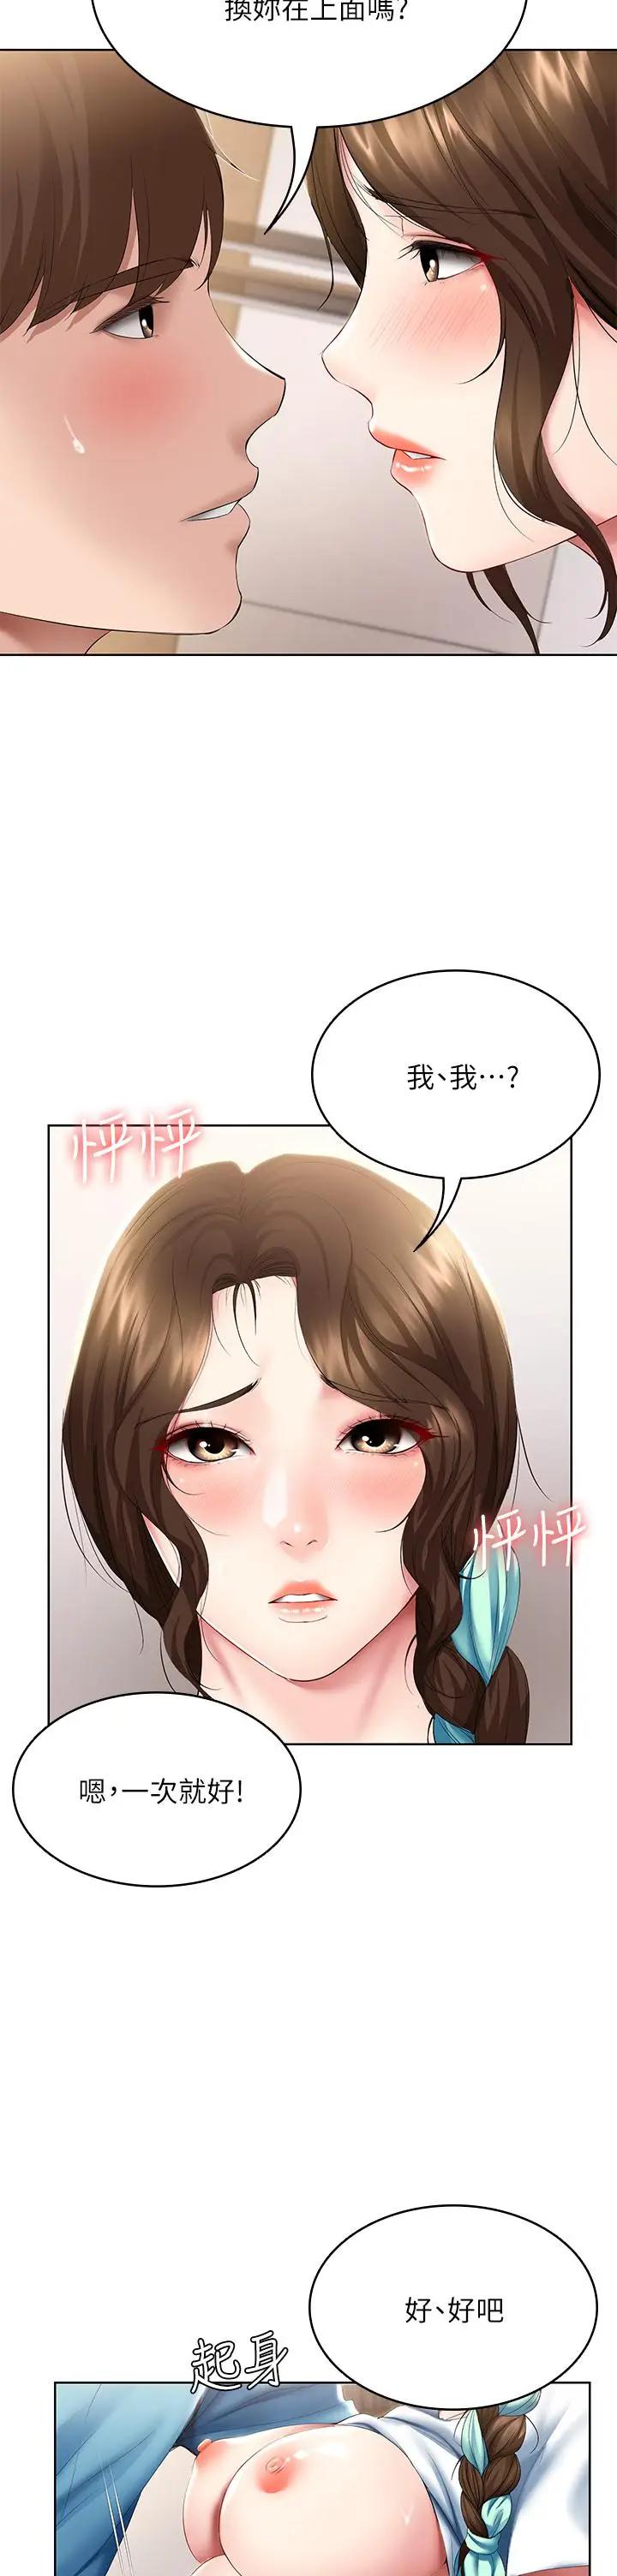 韩国污漫画 寄宿日記 第56话妖艳美静的特别服务 20